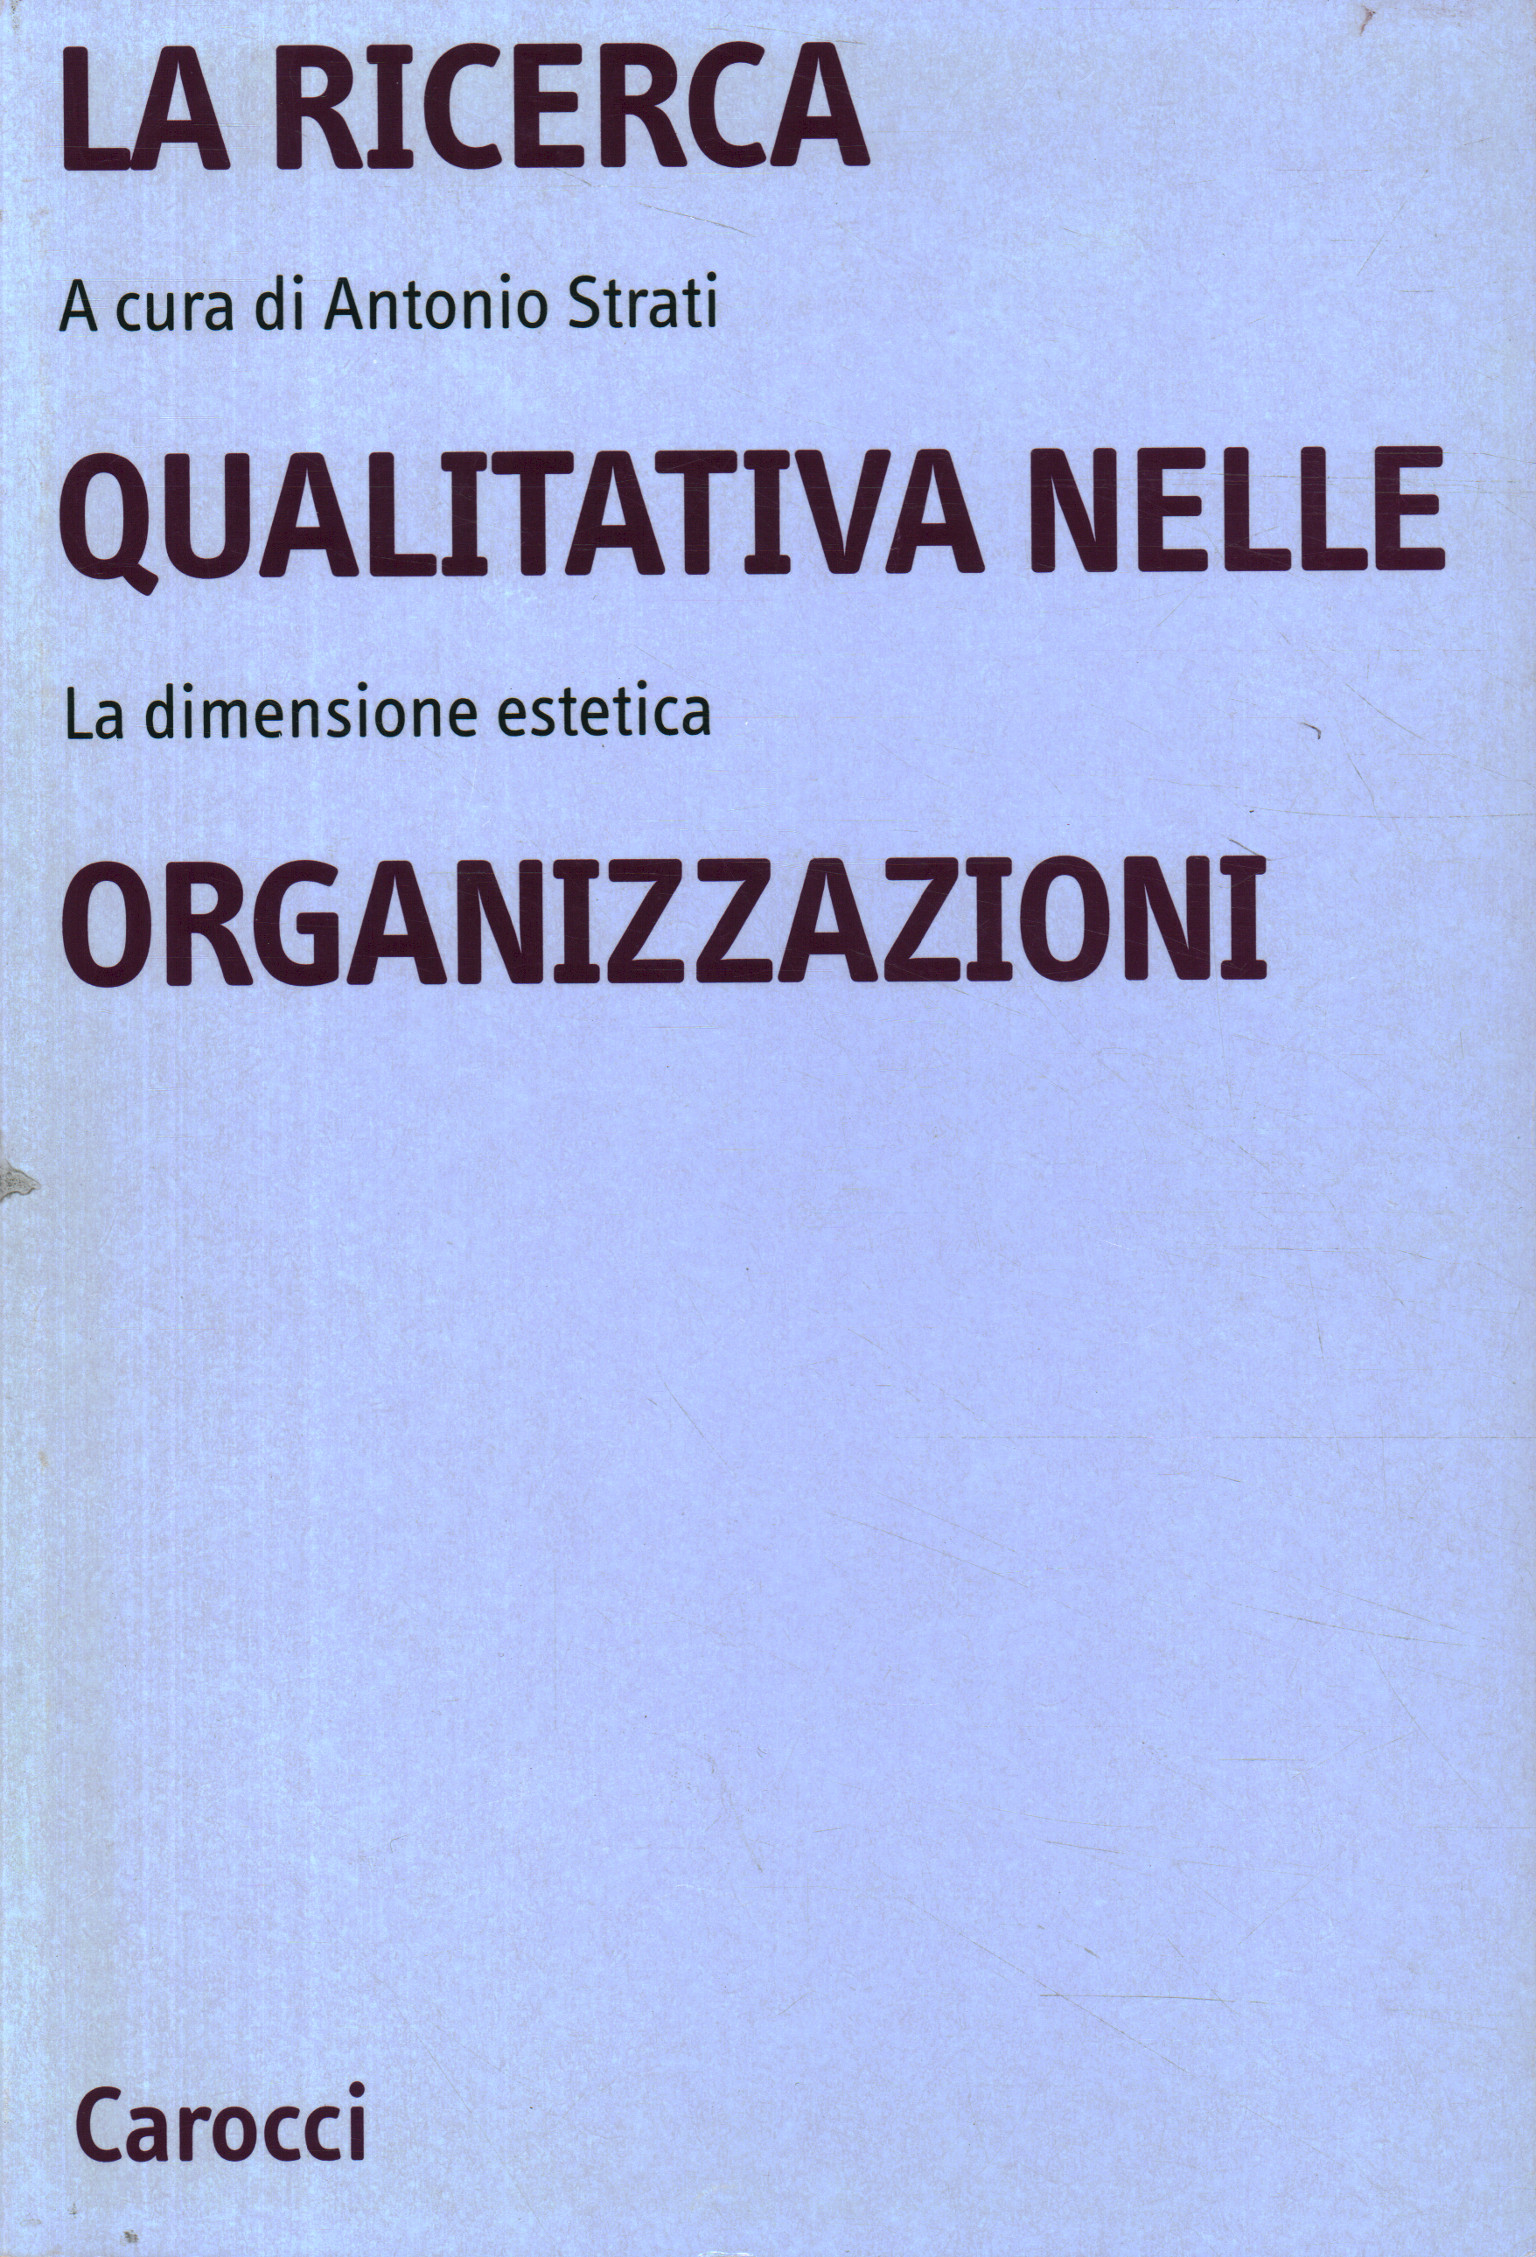 La ricerca qualitativa nelle organizzazion